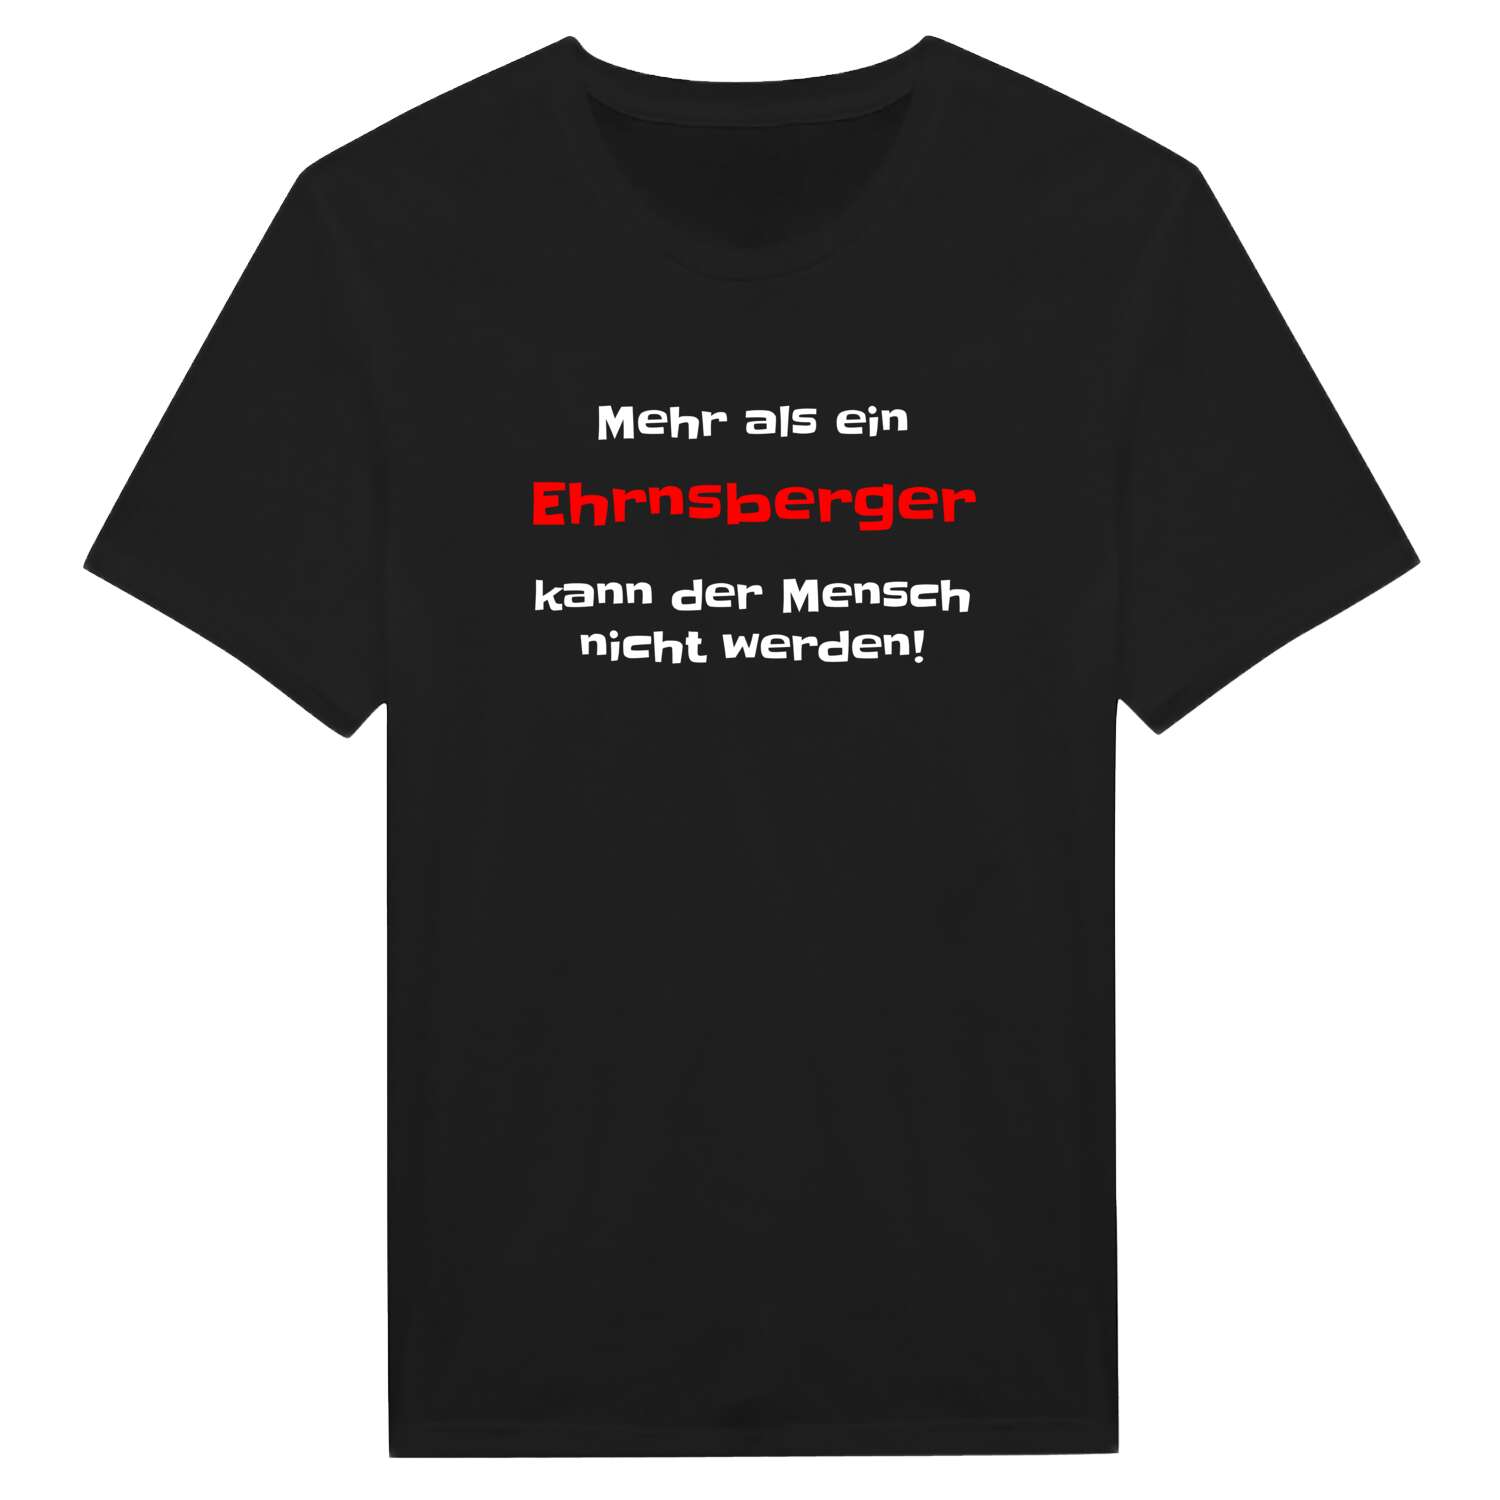 Ehrnsberg T-Shirt »Mehr als ein«